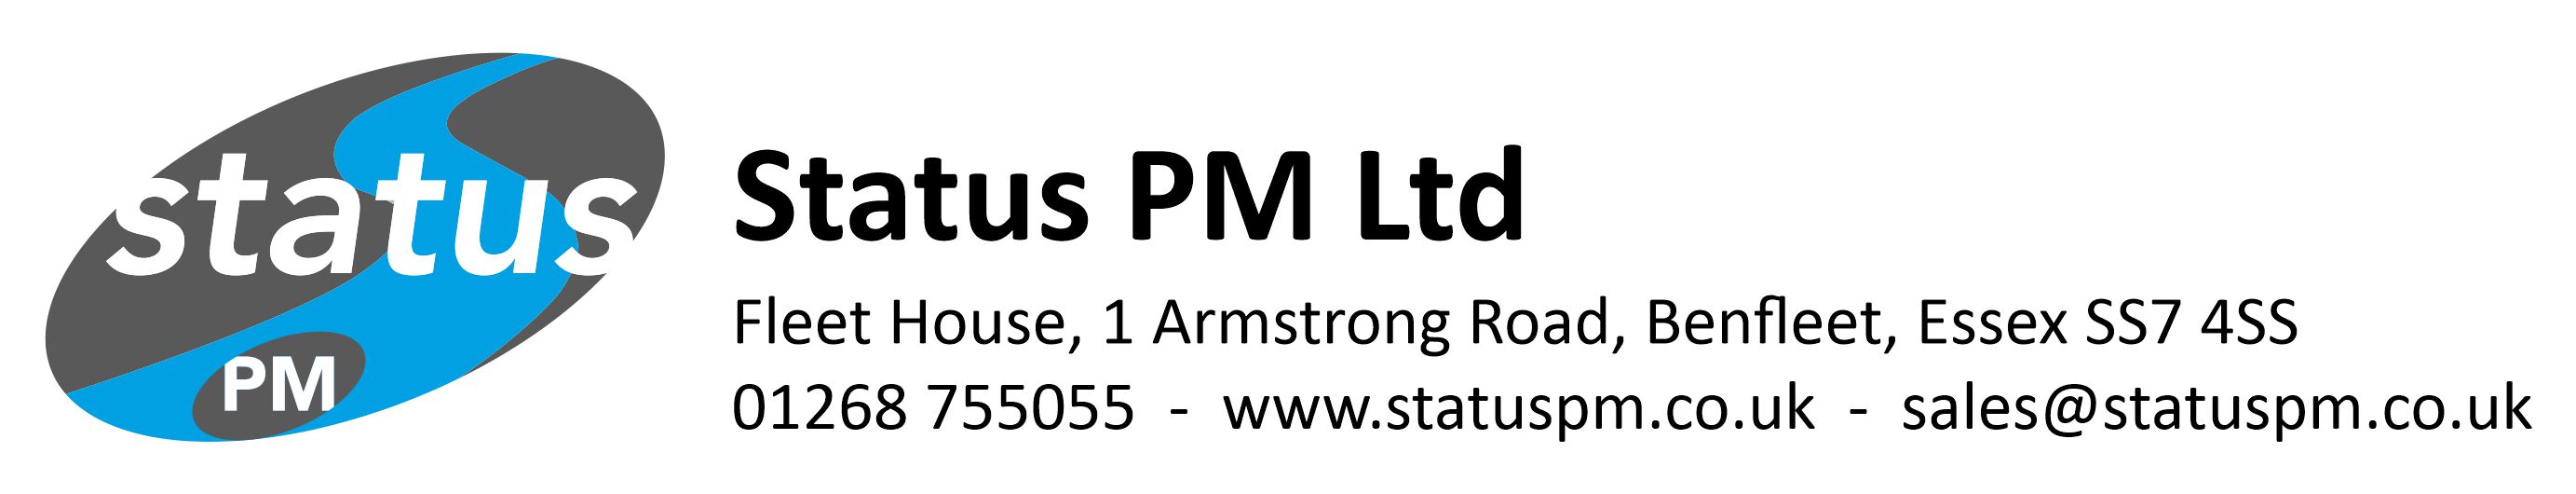 Status Pm Ltd